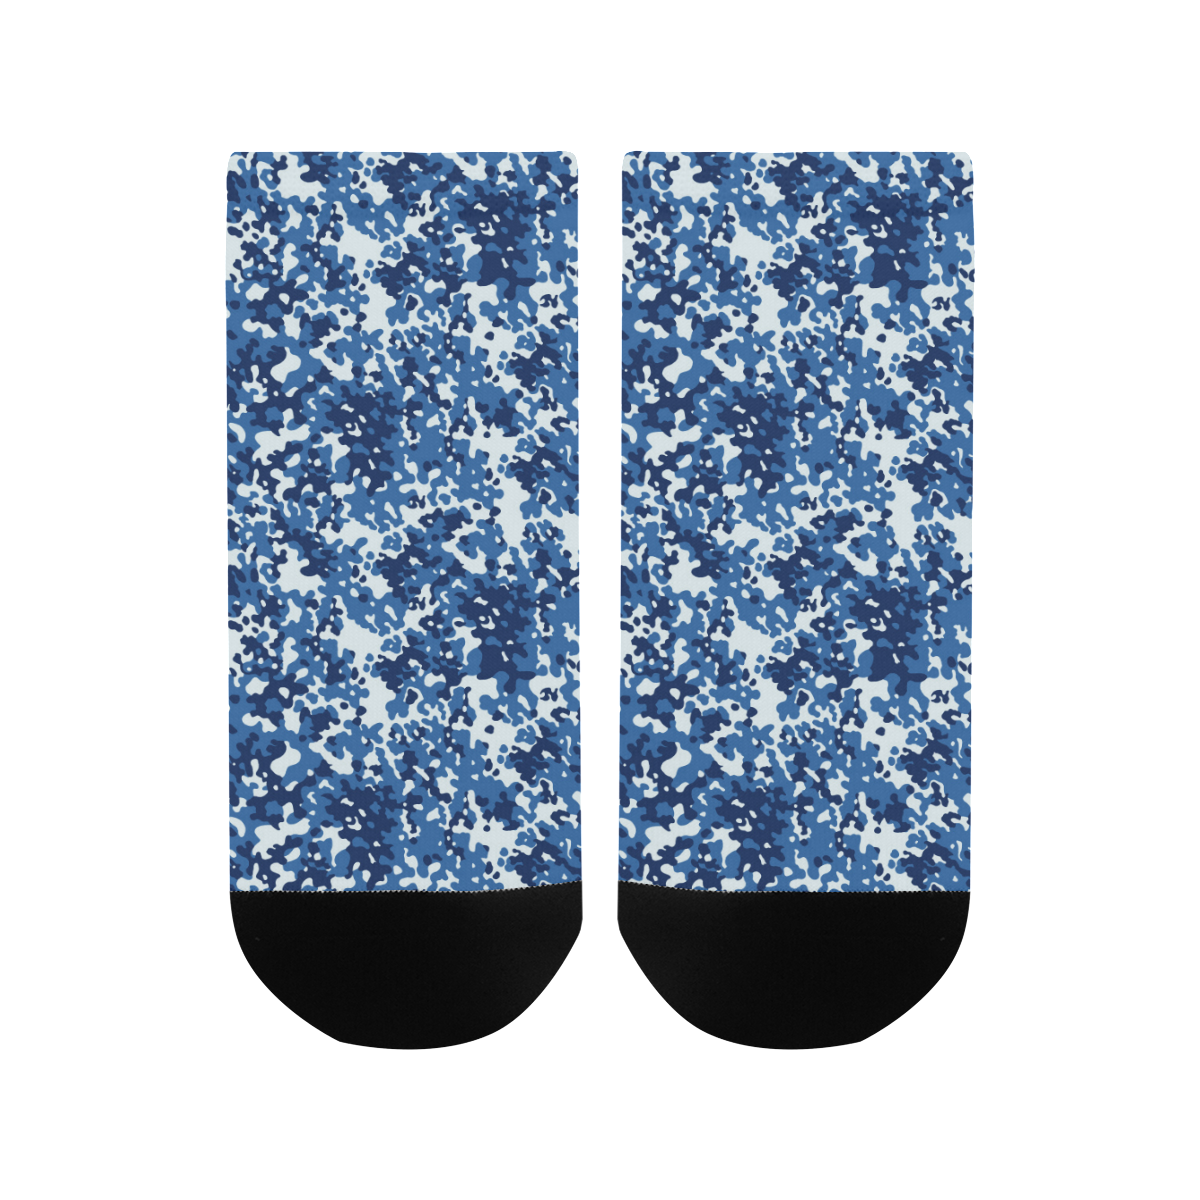 Digital Blue Camouflage Men's Ankle Socks